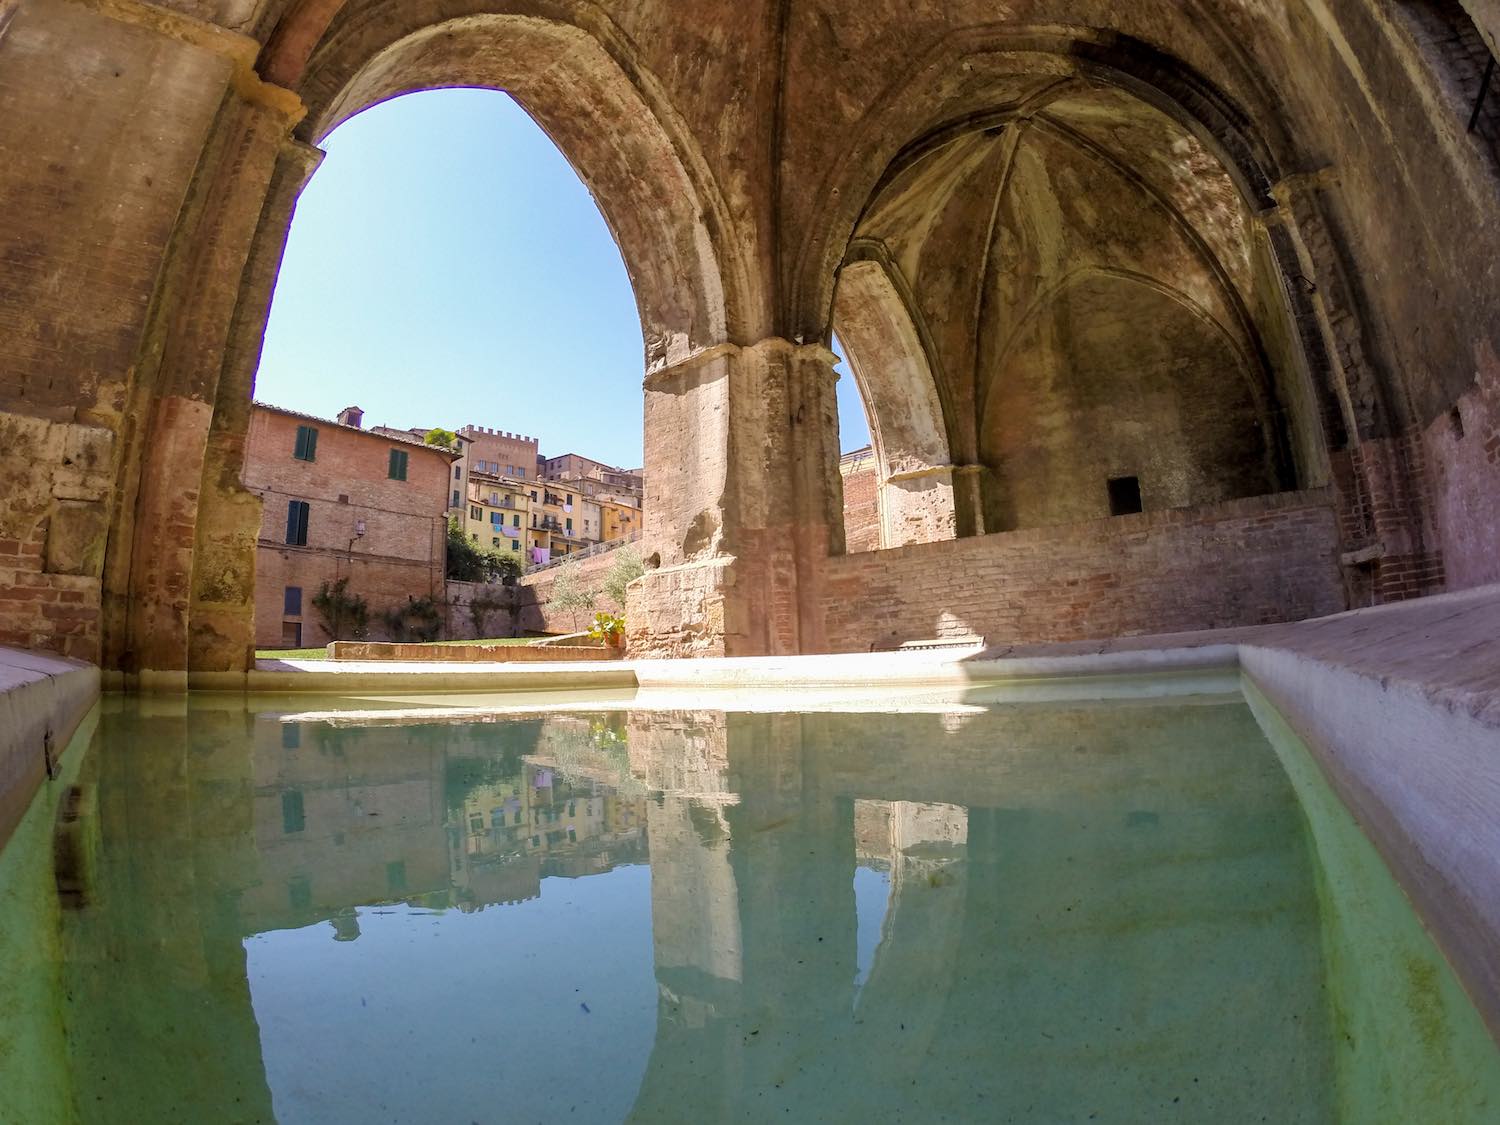 Alla scoperta di Siena sotterranea, un weekend nella città del Palio camminando per i bottini di Siena, la rete di approvvigionamento d'acqua delle fonti storiche della città.